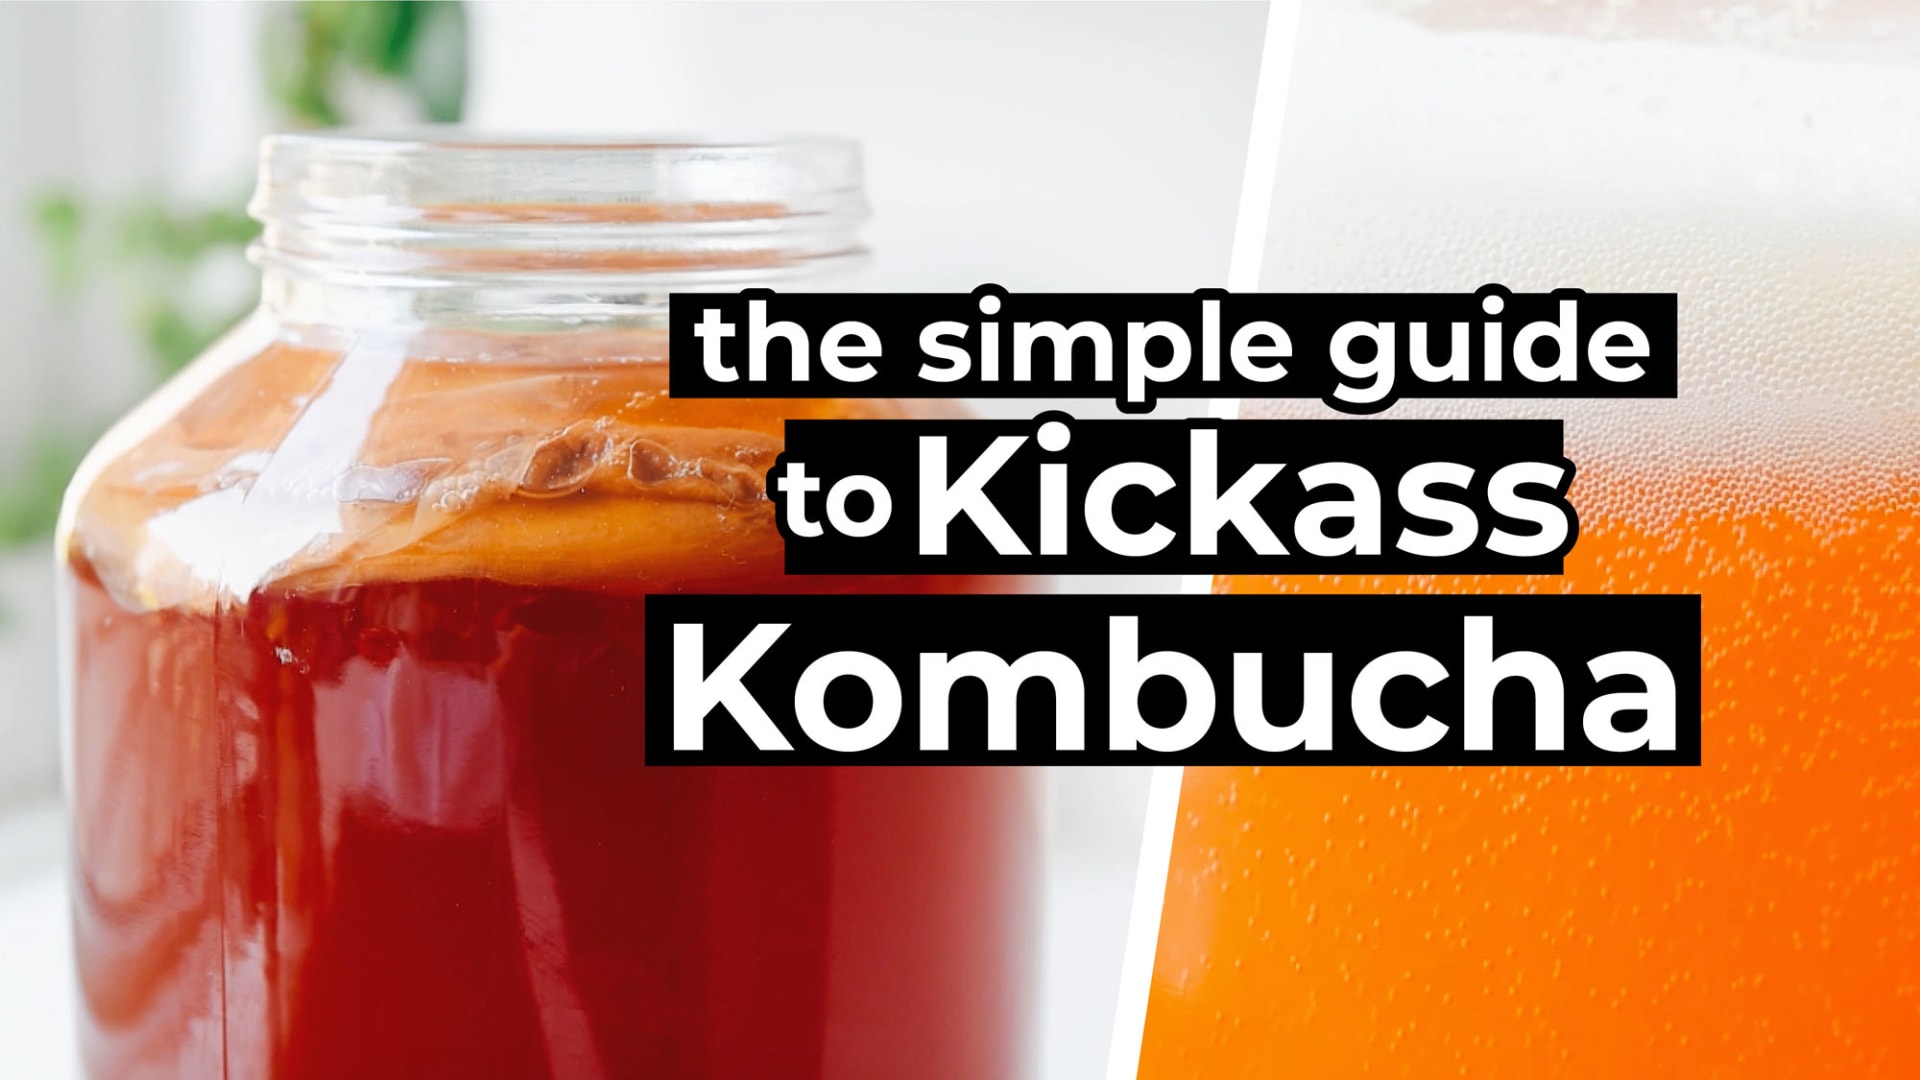 Homemade Kombucha: The Simple Guide To Kickass Kombucha